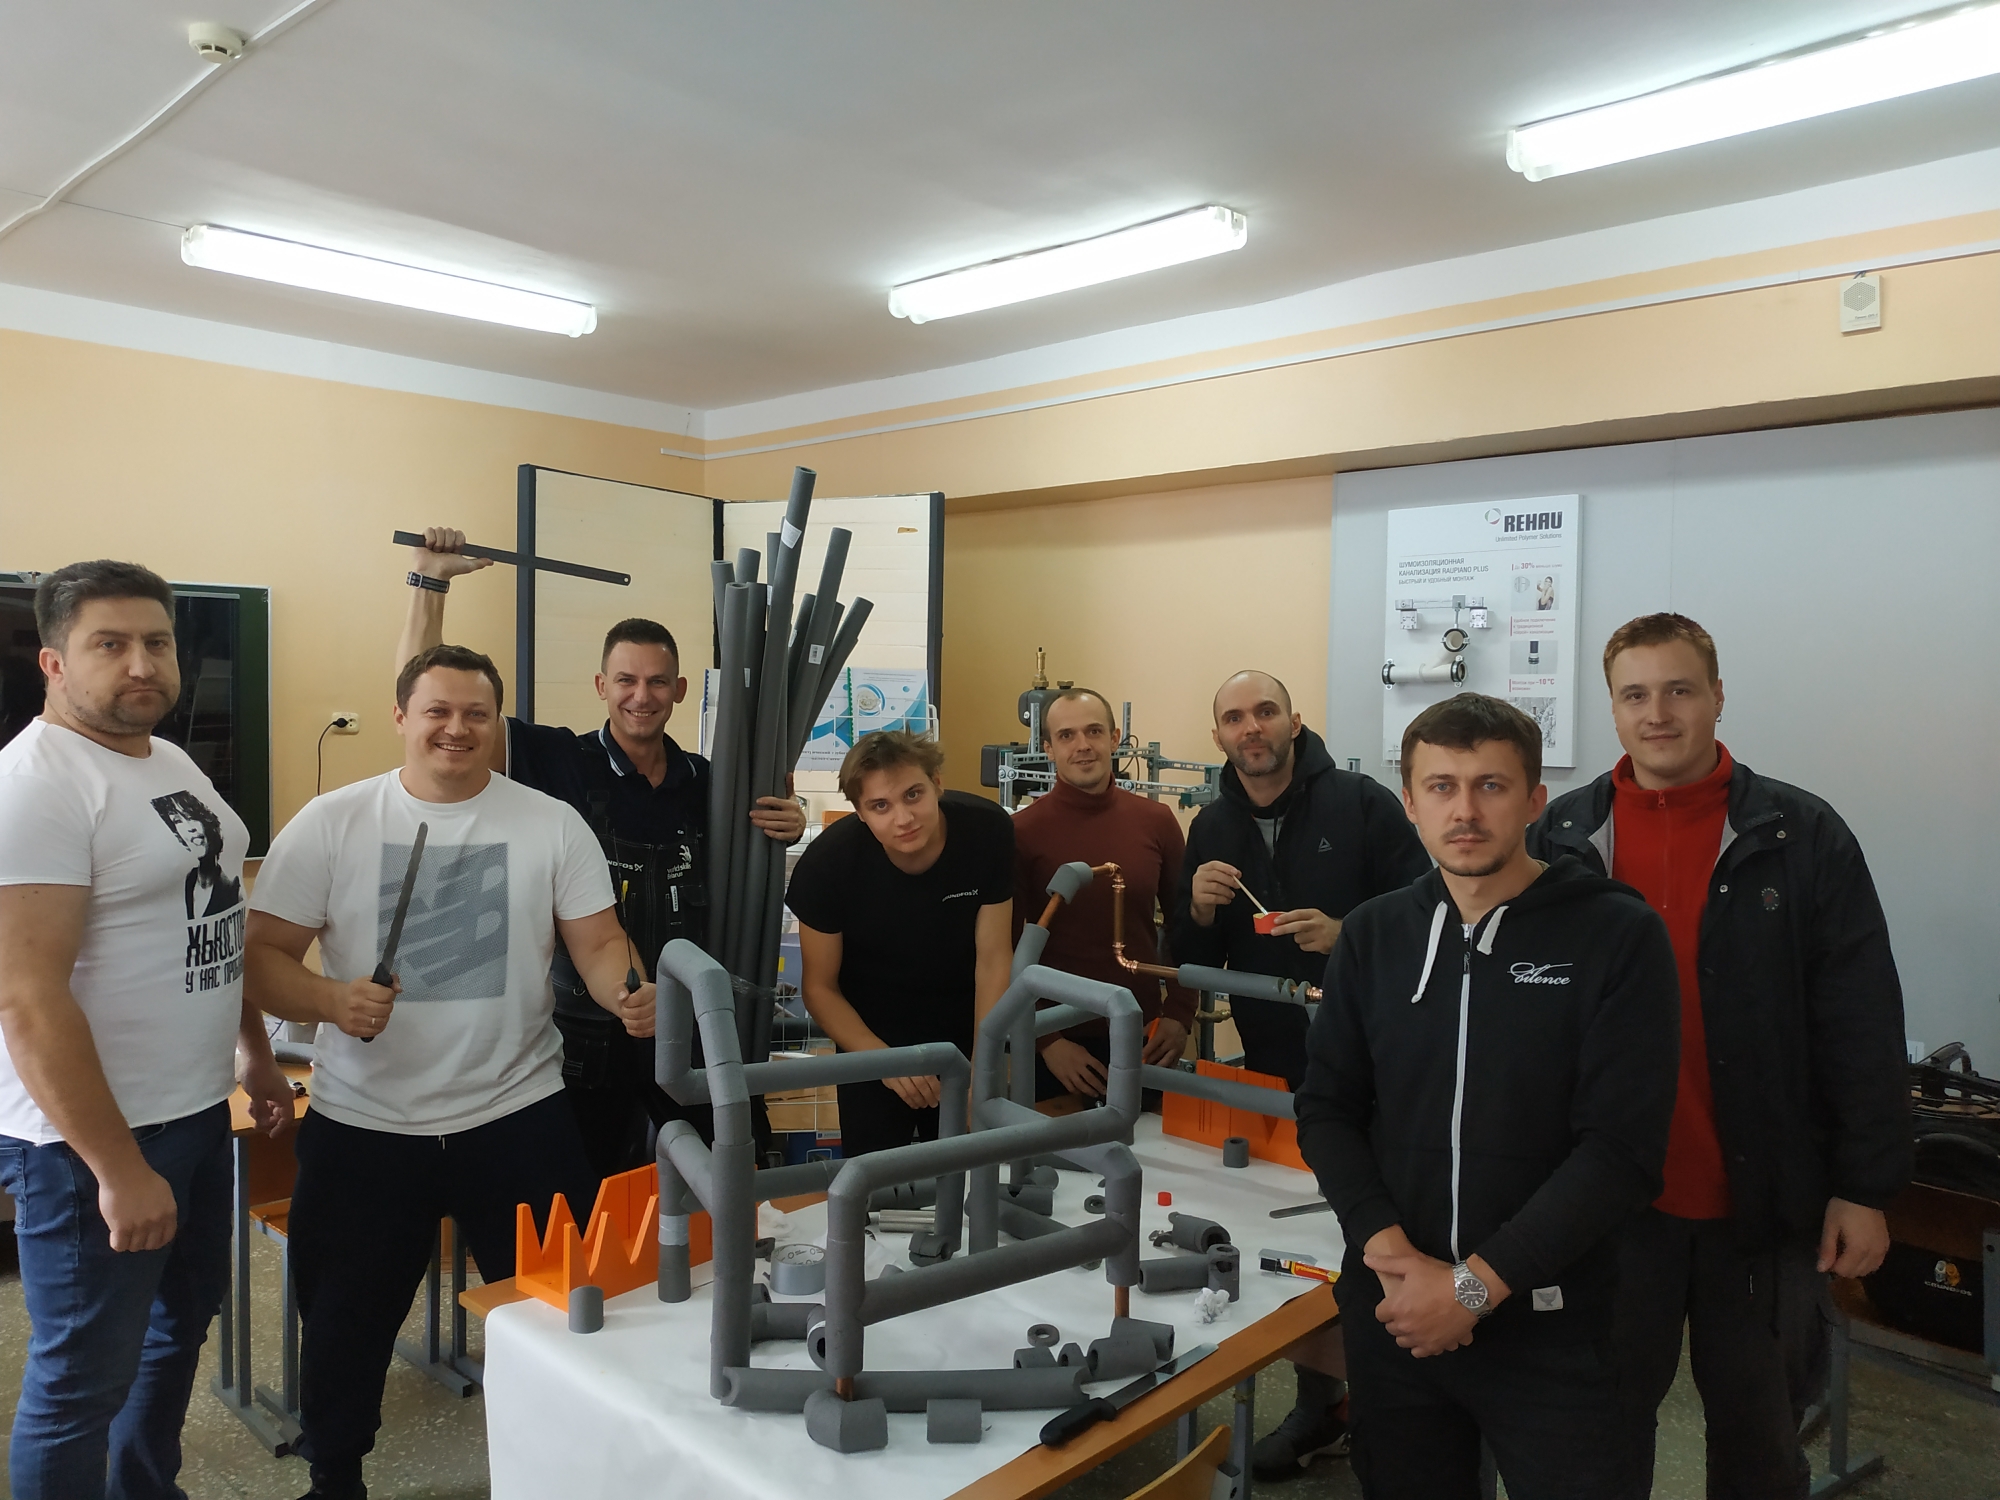 Meeting of installers in Minsk